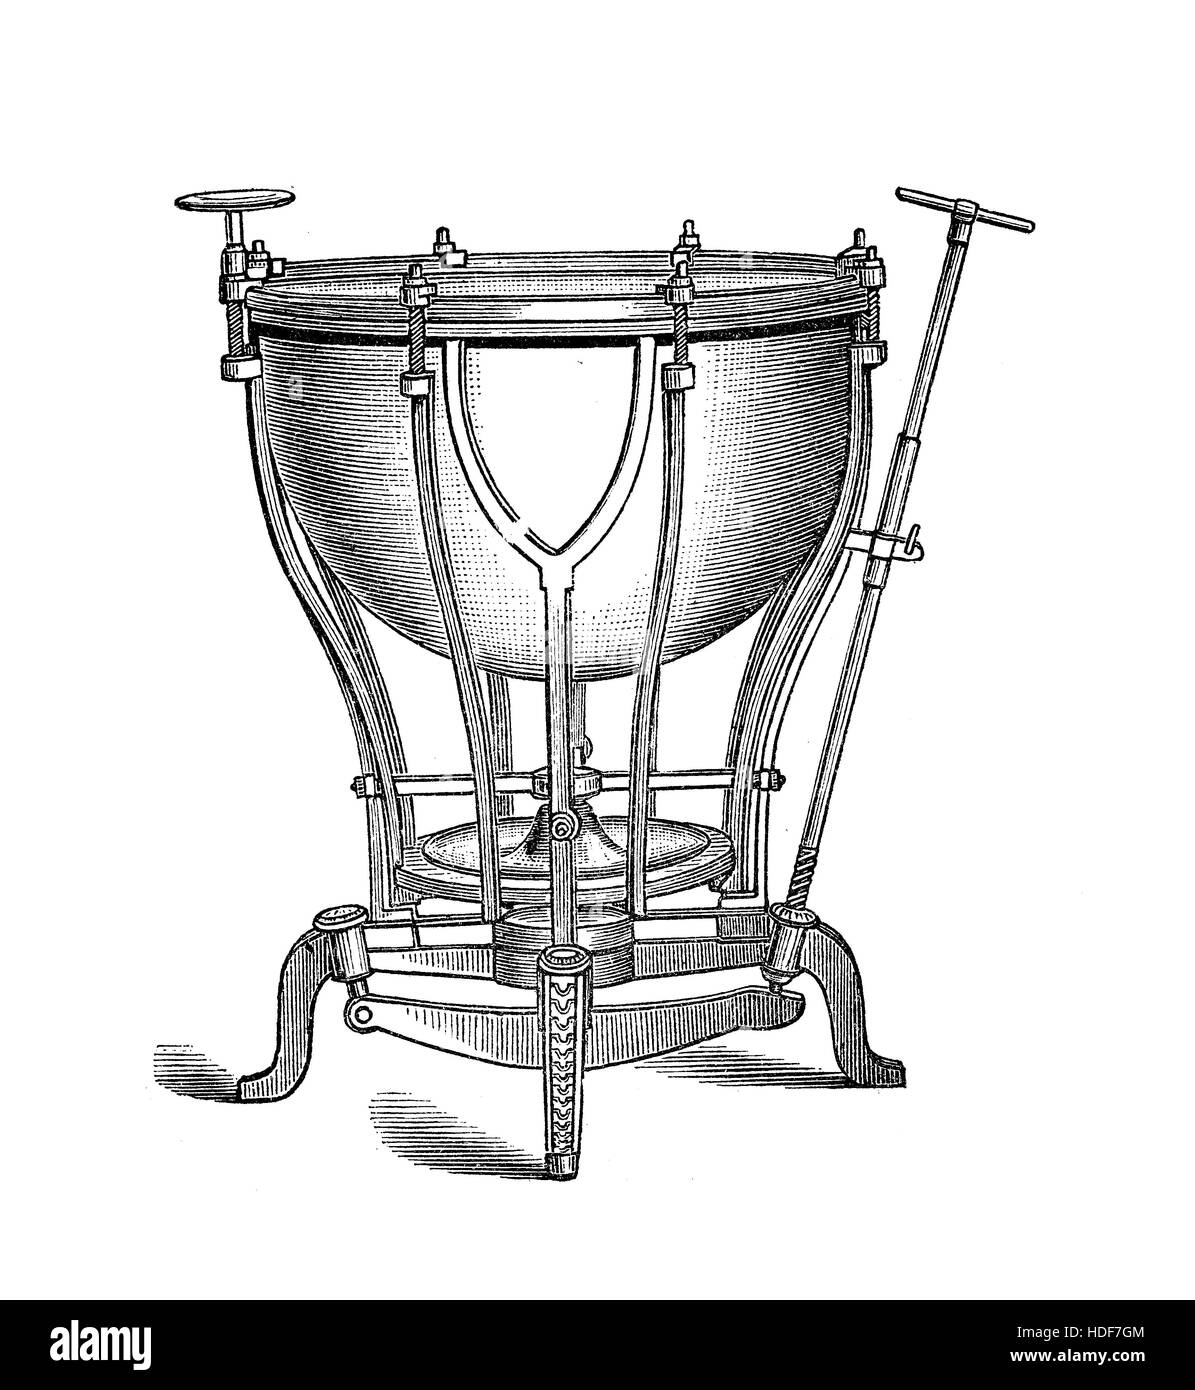 Maschine Pauken Musikinstrument mit mechanischen Spannung Anpassung Systems, XIX Jahrhundert Gravur Stockfoto